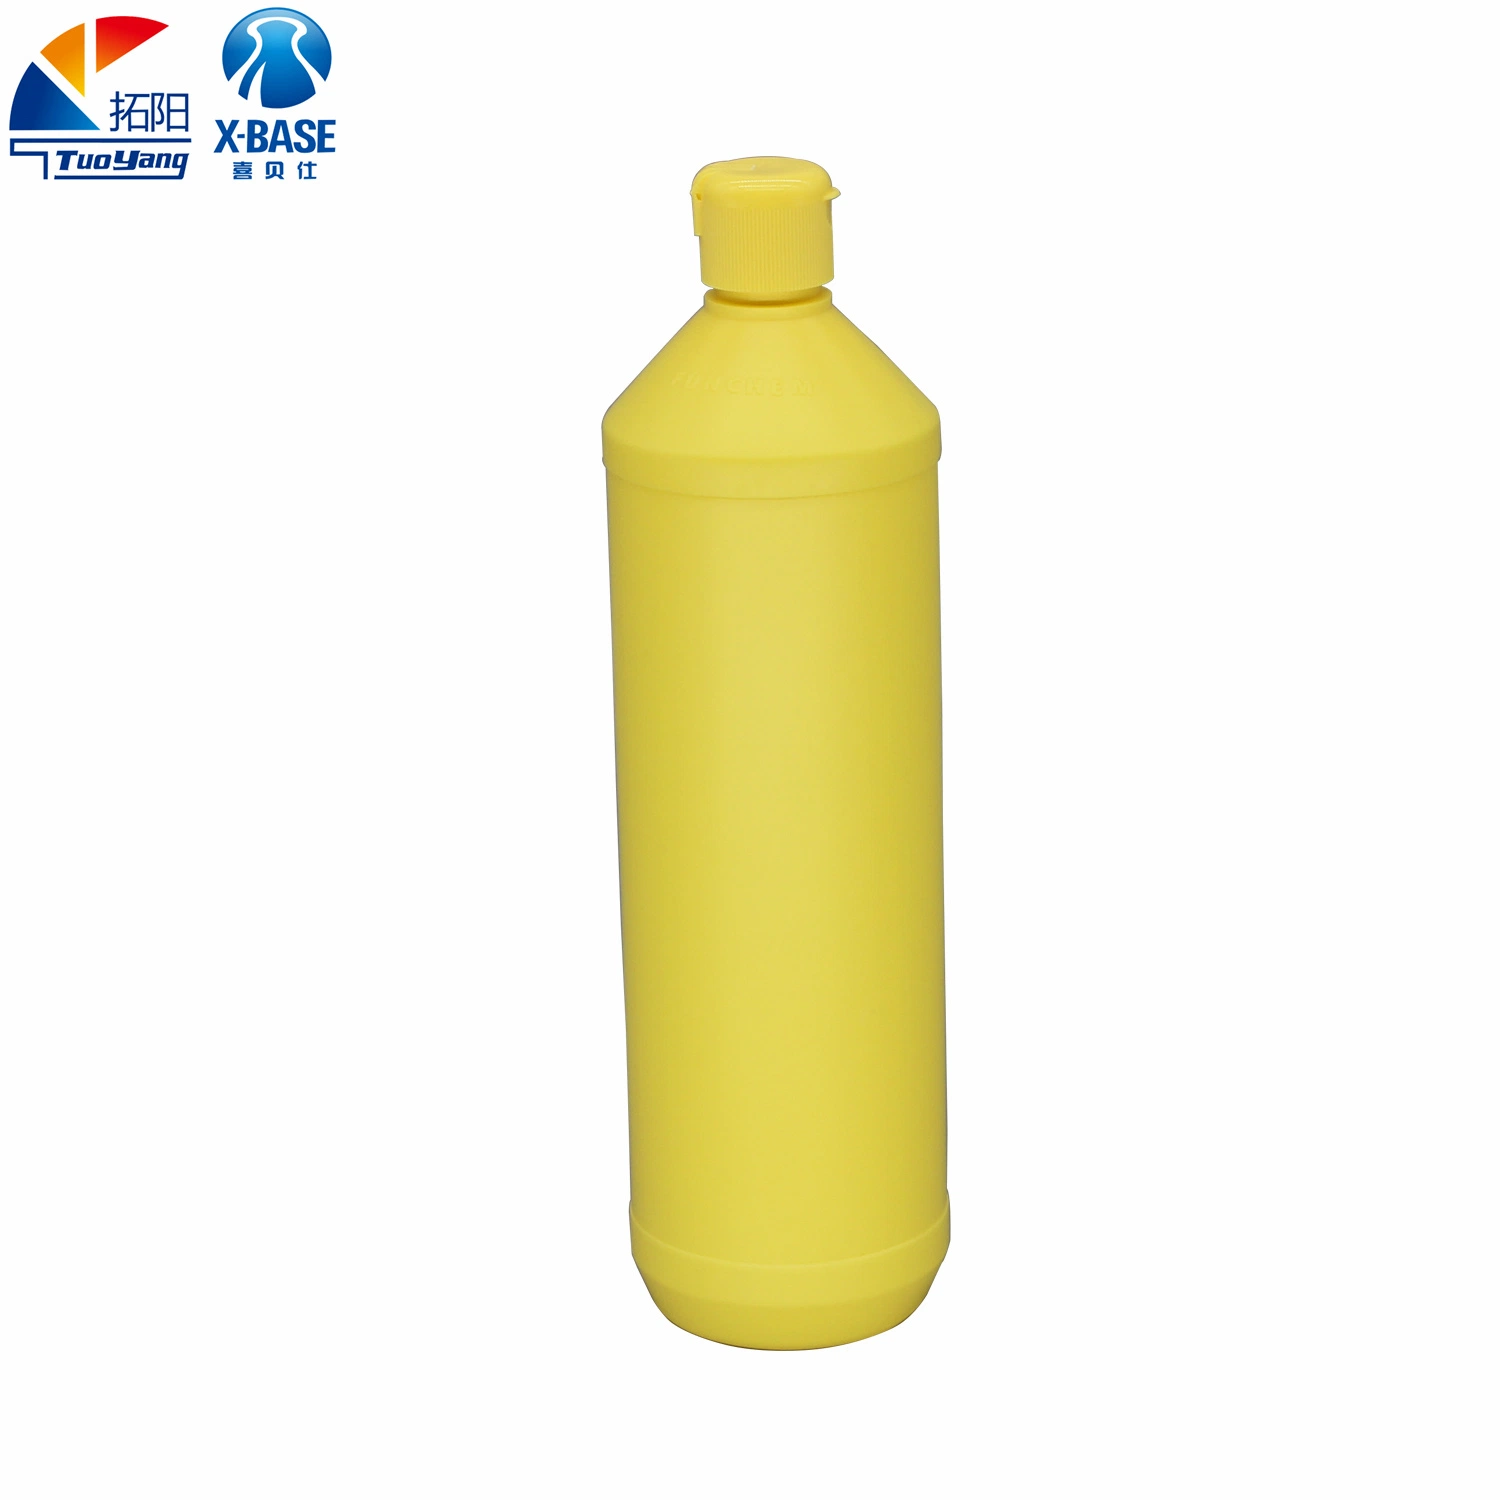 Multipurpose PE Plastic Liquid Plastic Container for Cleaning Plastic Bottles Detergent Bottles Factory Wholesale